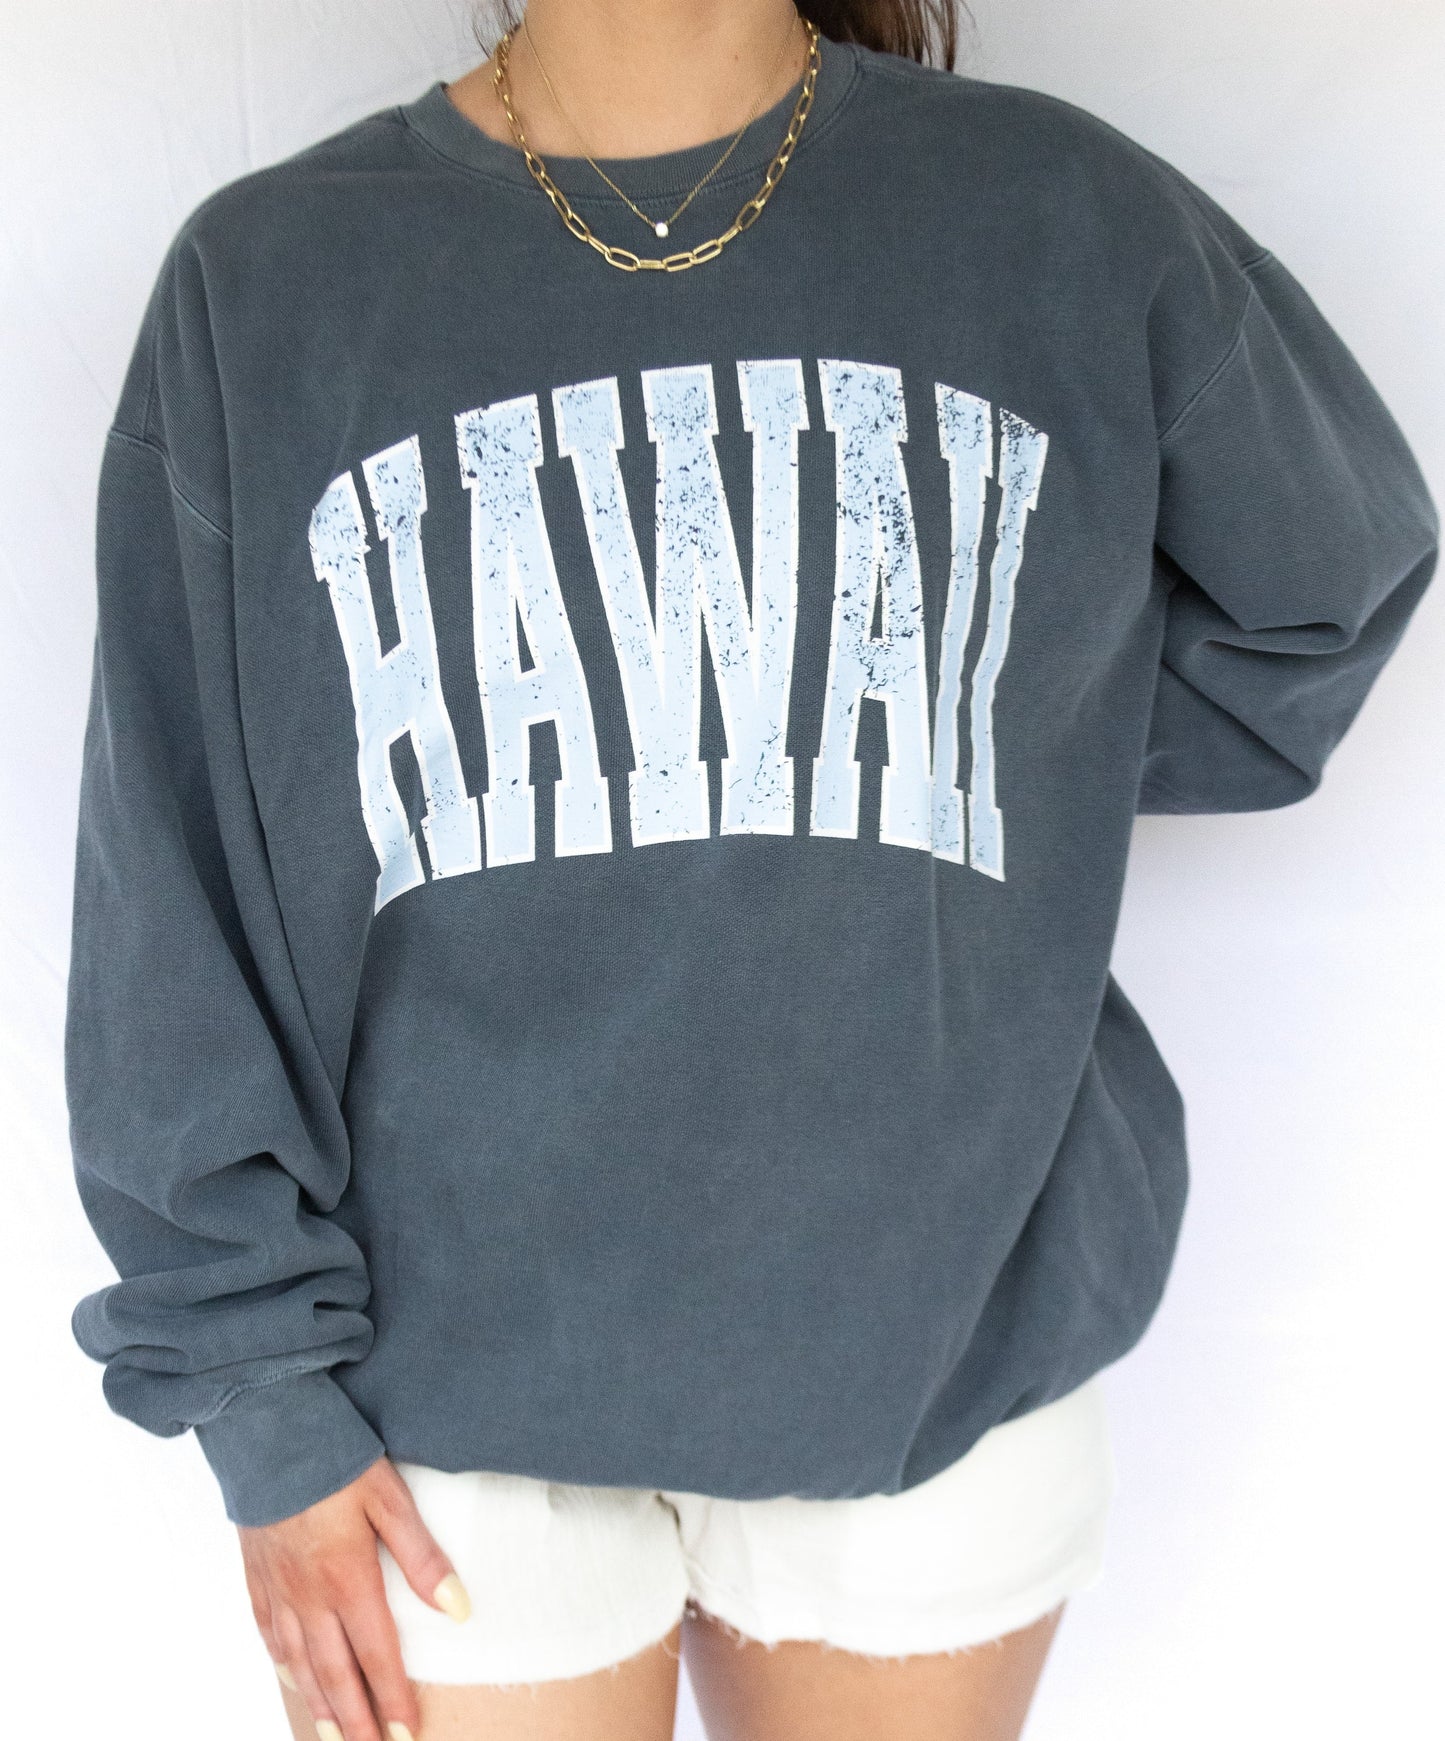 Hangin' in Hawaii Sweatshirt